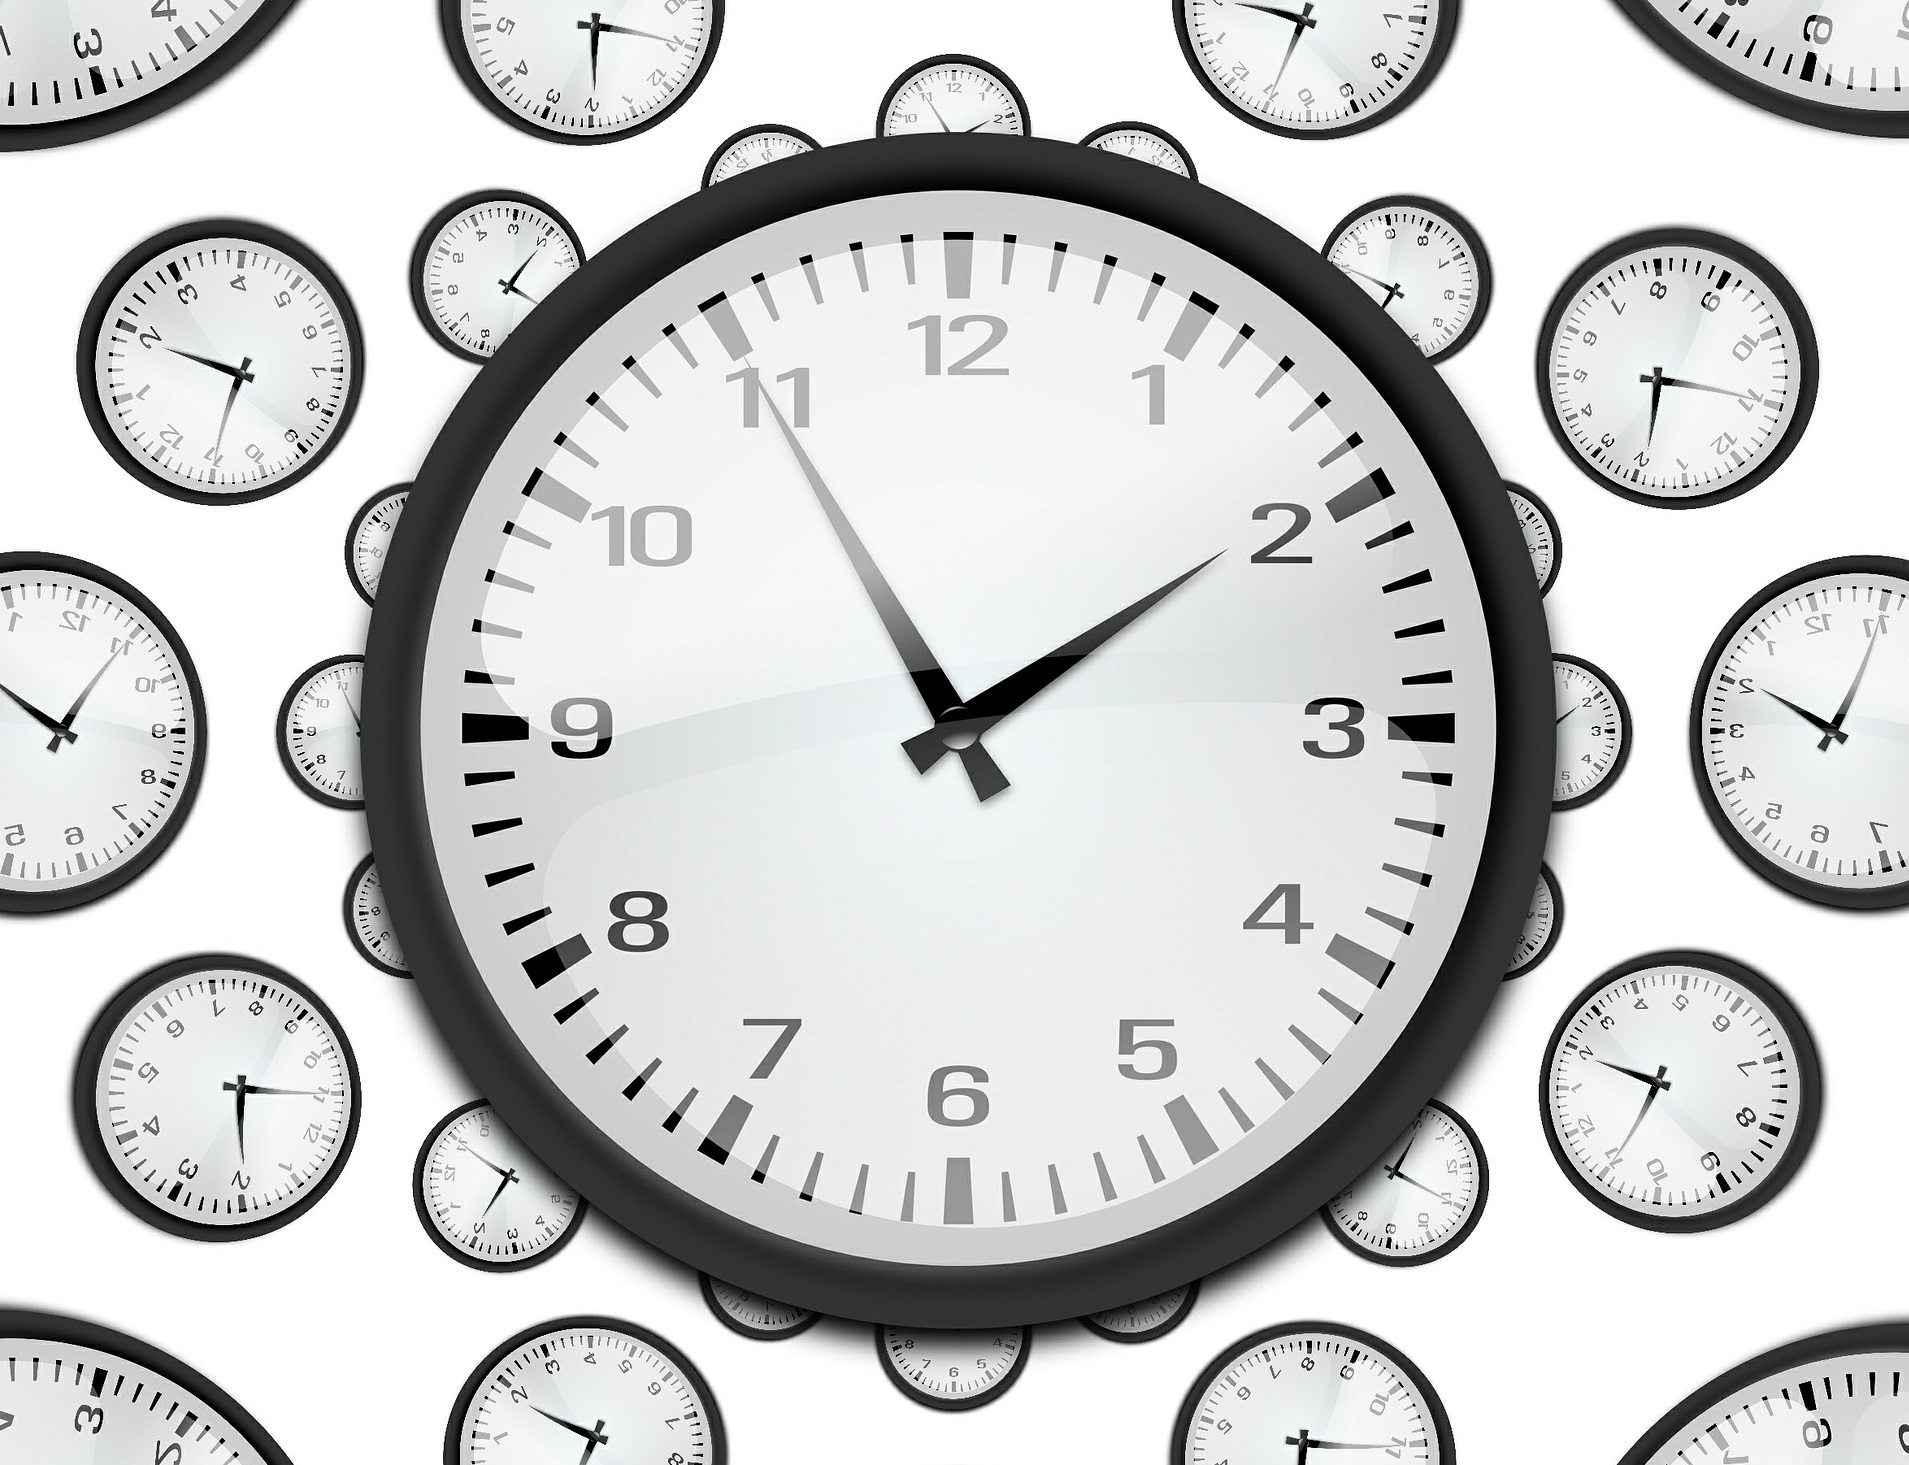 1час 15 минут. Изображение часов. Часы на белом фоне. Часы 8 утра. Часы 8 часов.